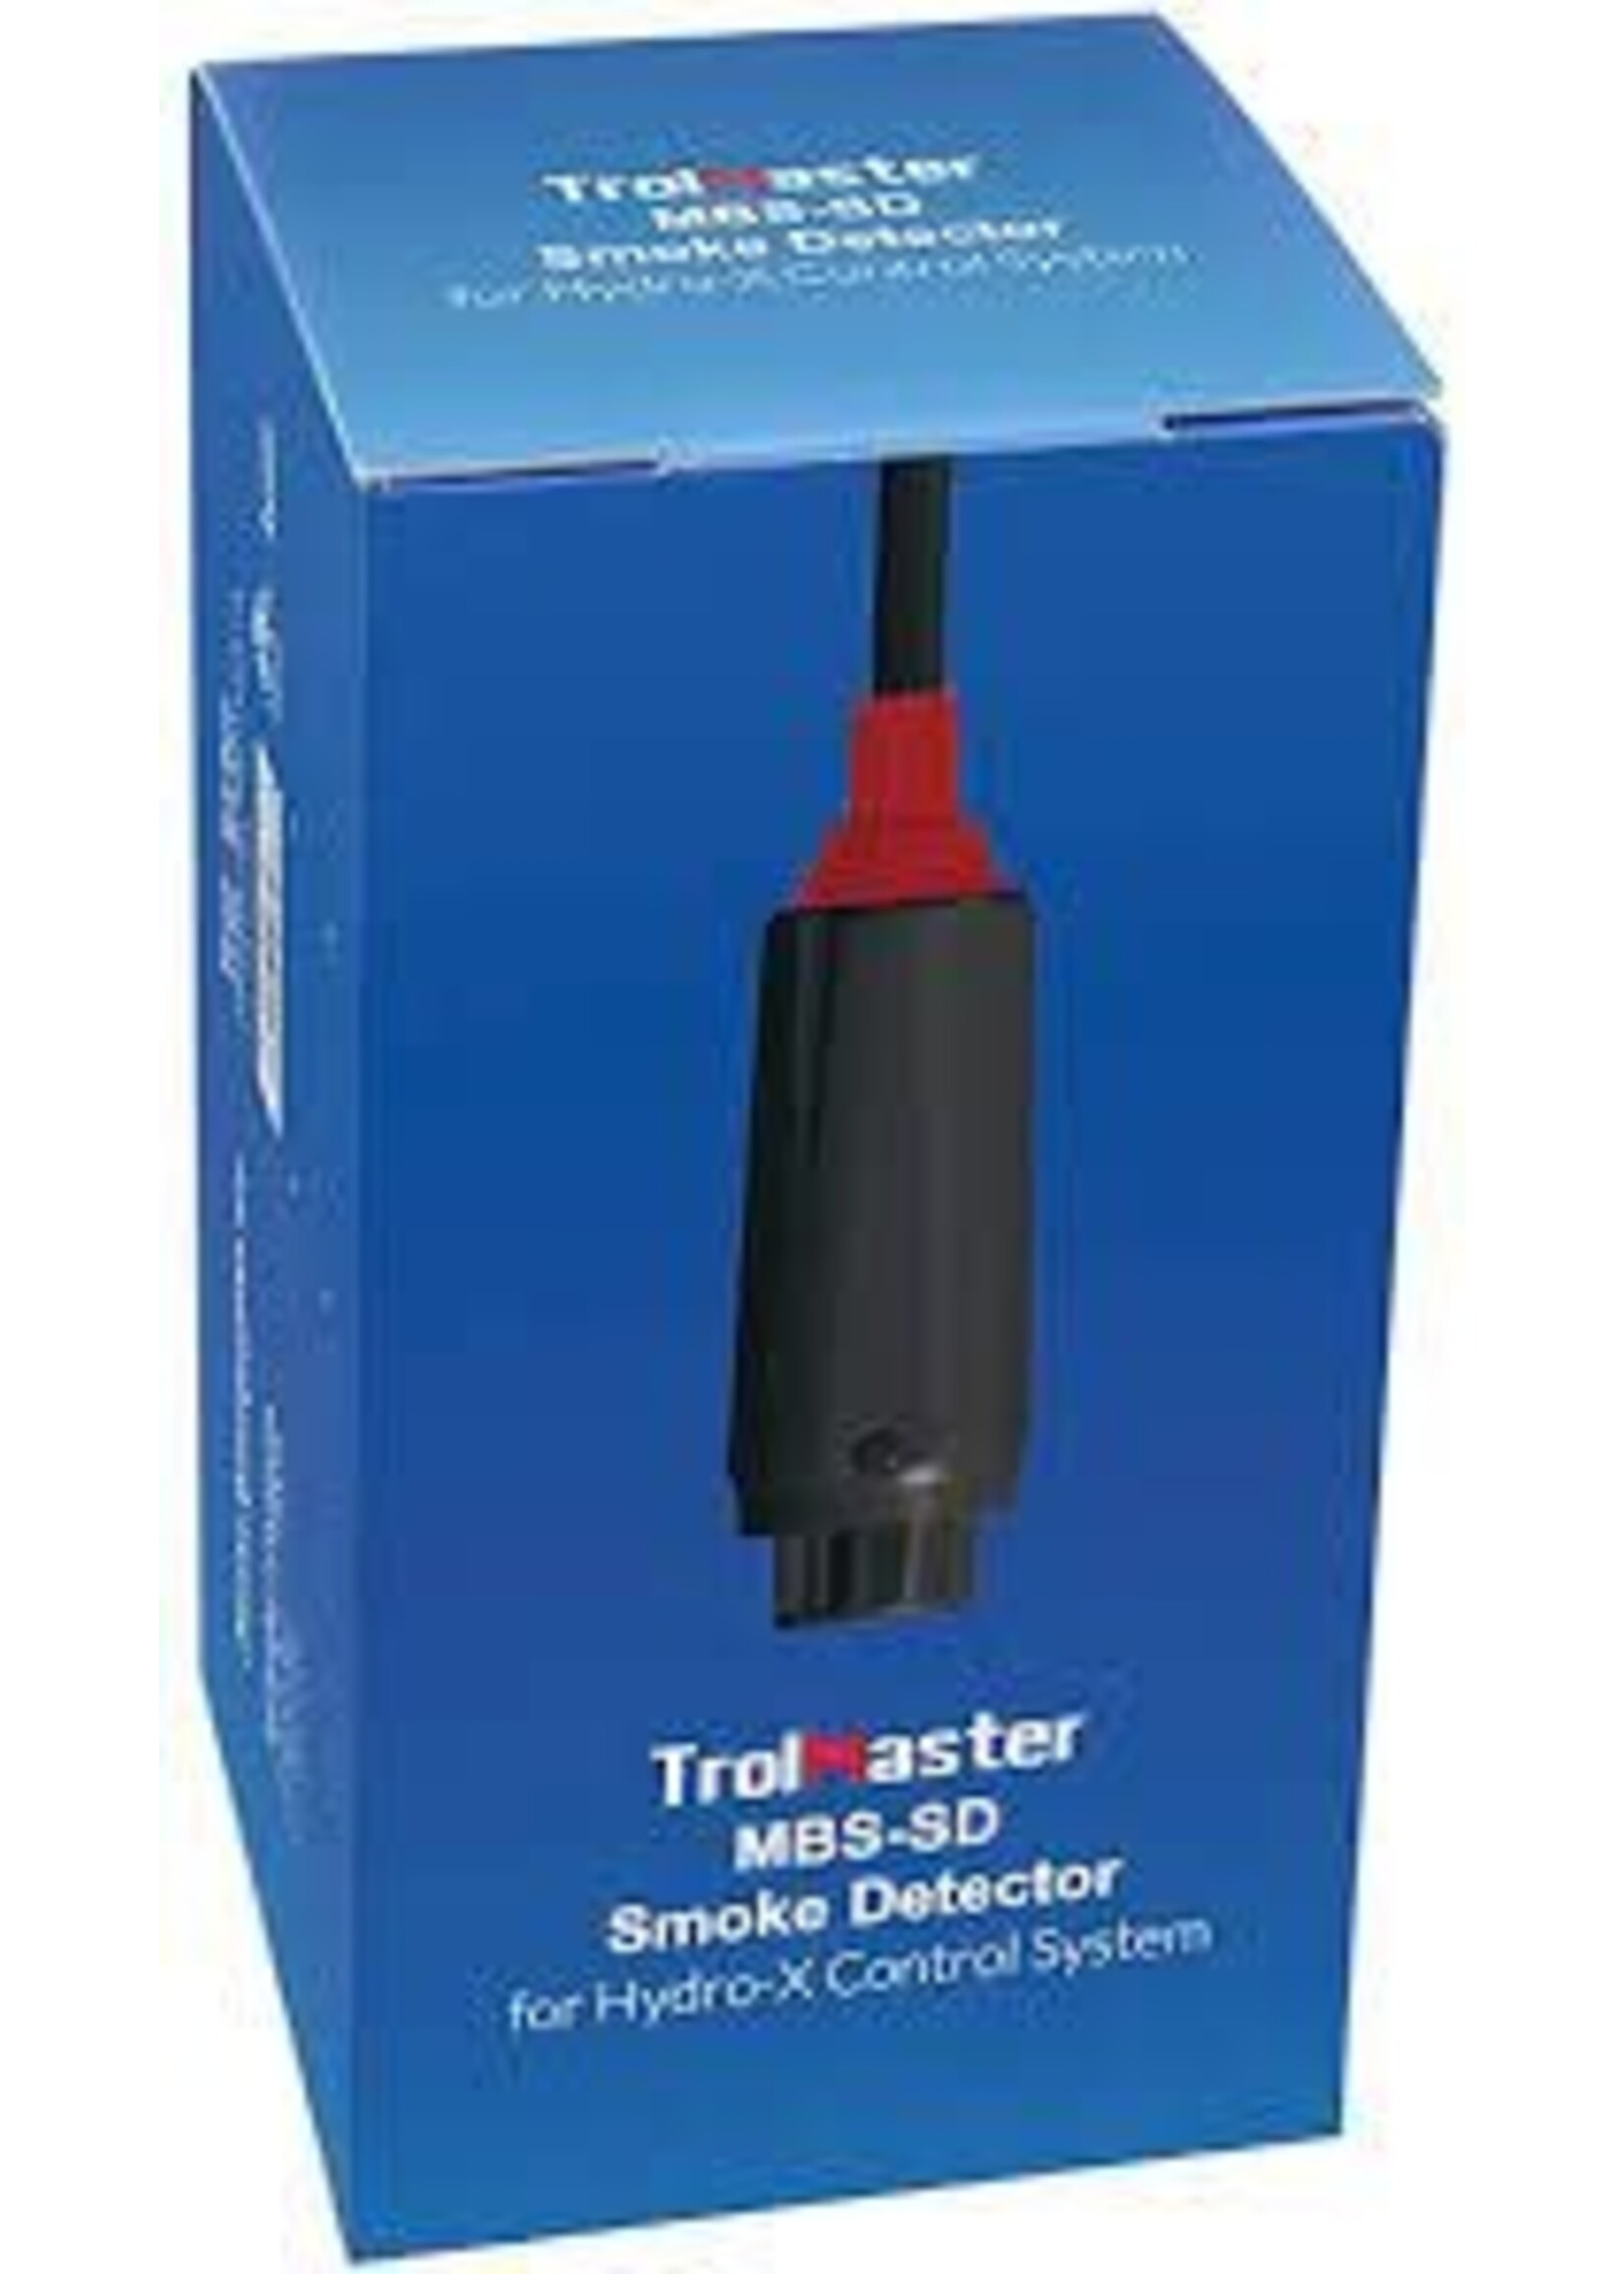 TrolMaster Hydro-X Smoke Detector